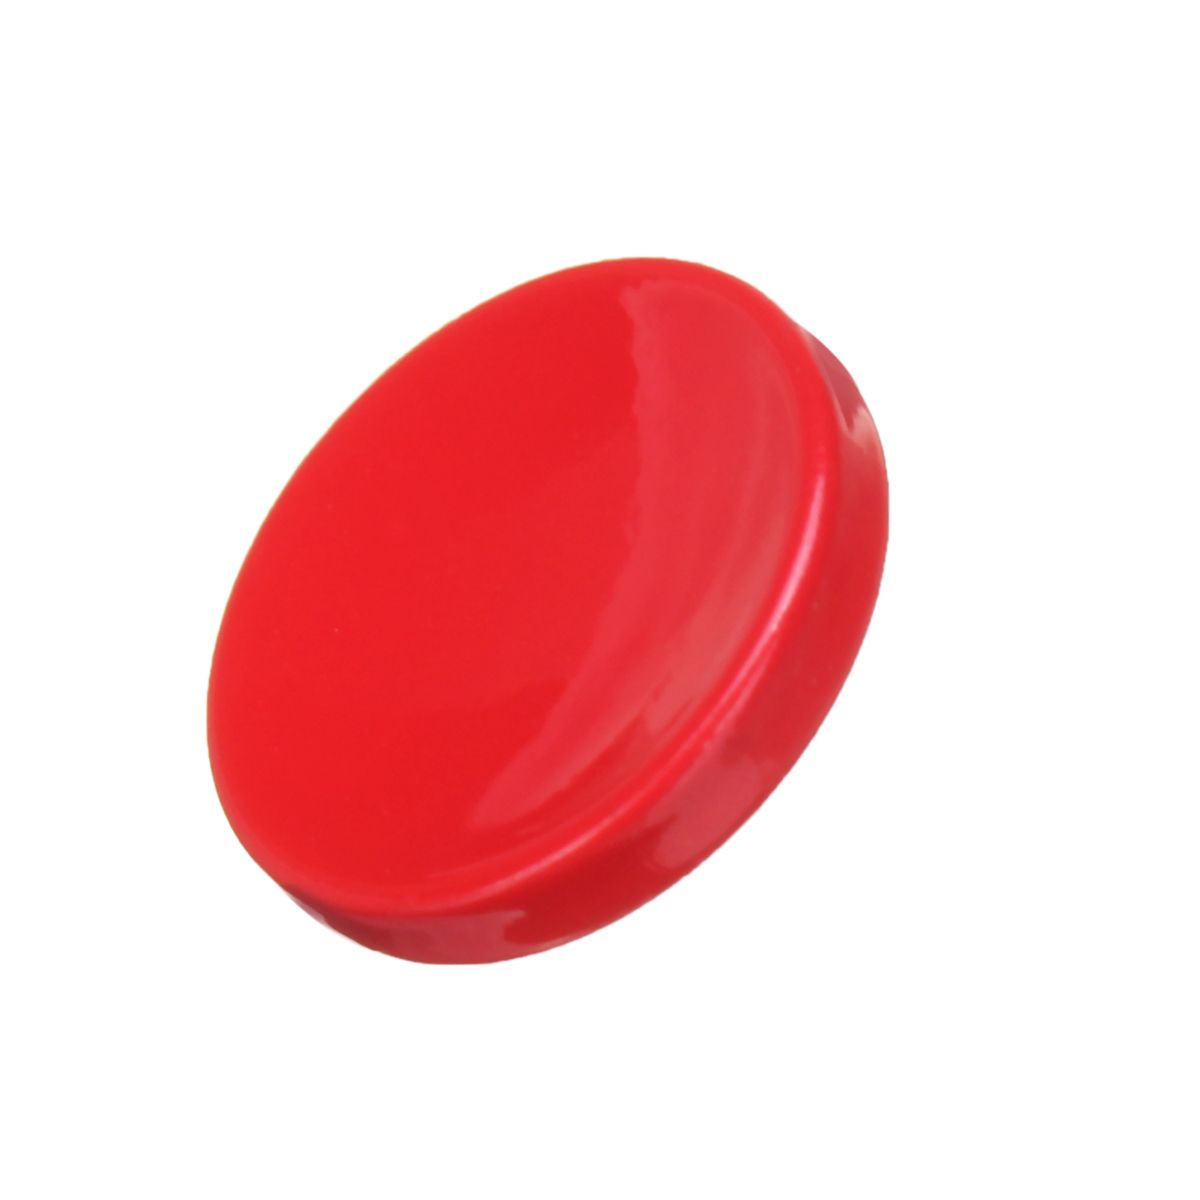 Red-Aluminum-Alloy-Shutter-Release-Button-for-Fuji-XT2-X20-X100-Buttons-1296992